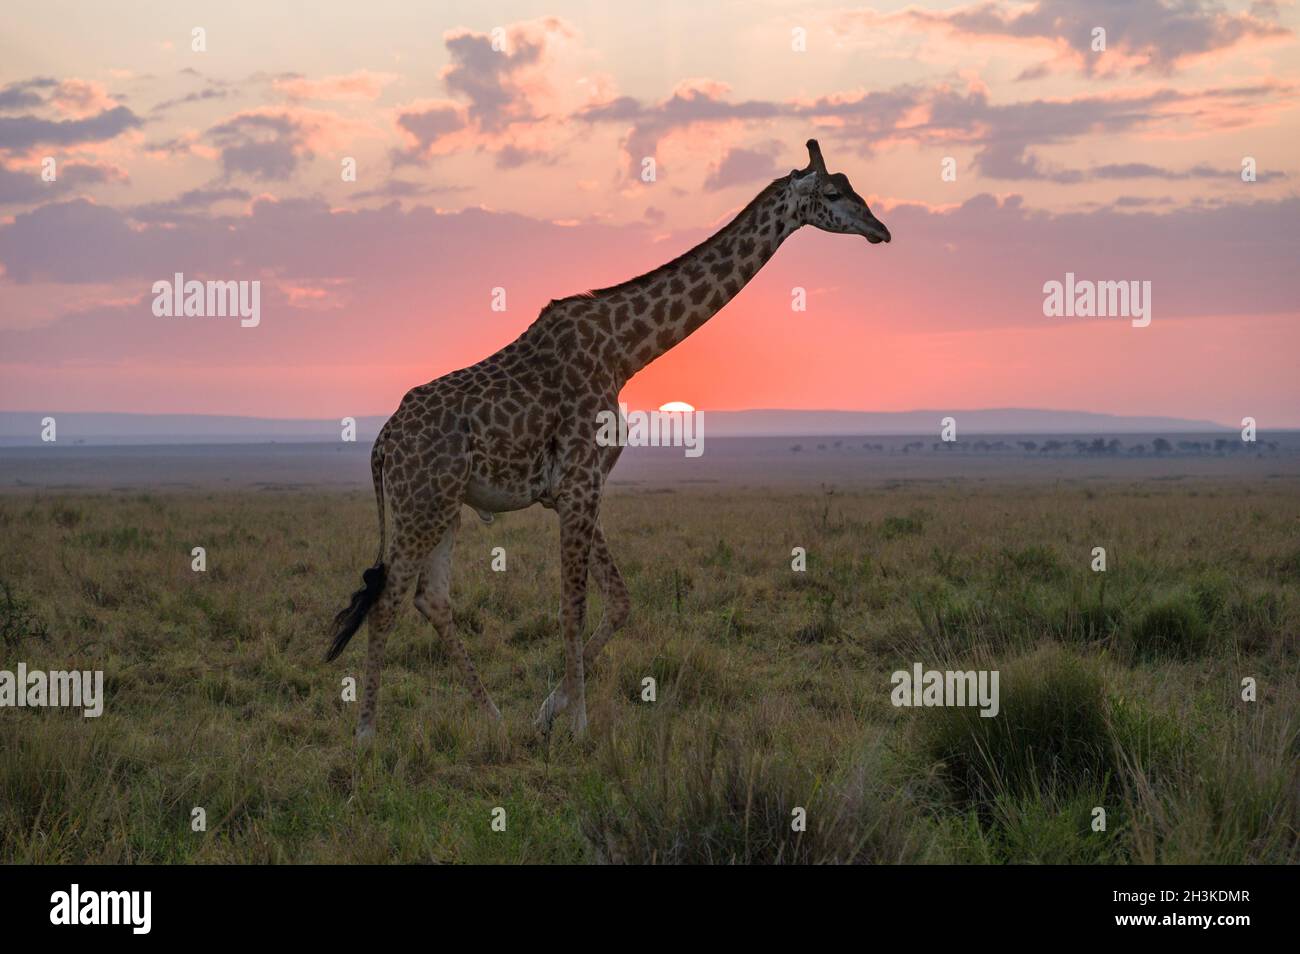 Masai Giraffe (Giraffa camelopardalis tippelskirchi) partially silhouetted by sun at sunrise, Maasai Mara, Kenya Stock Photo